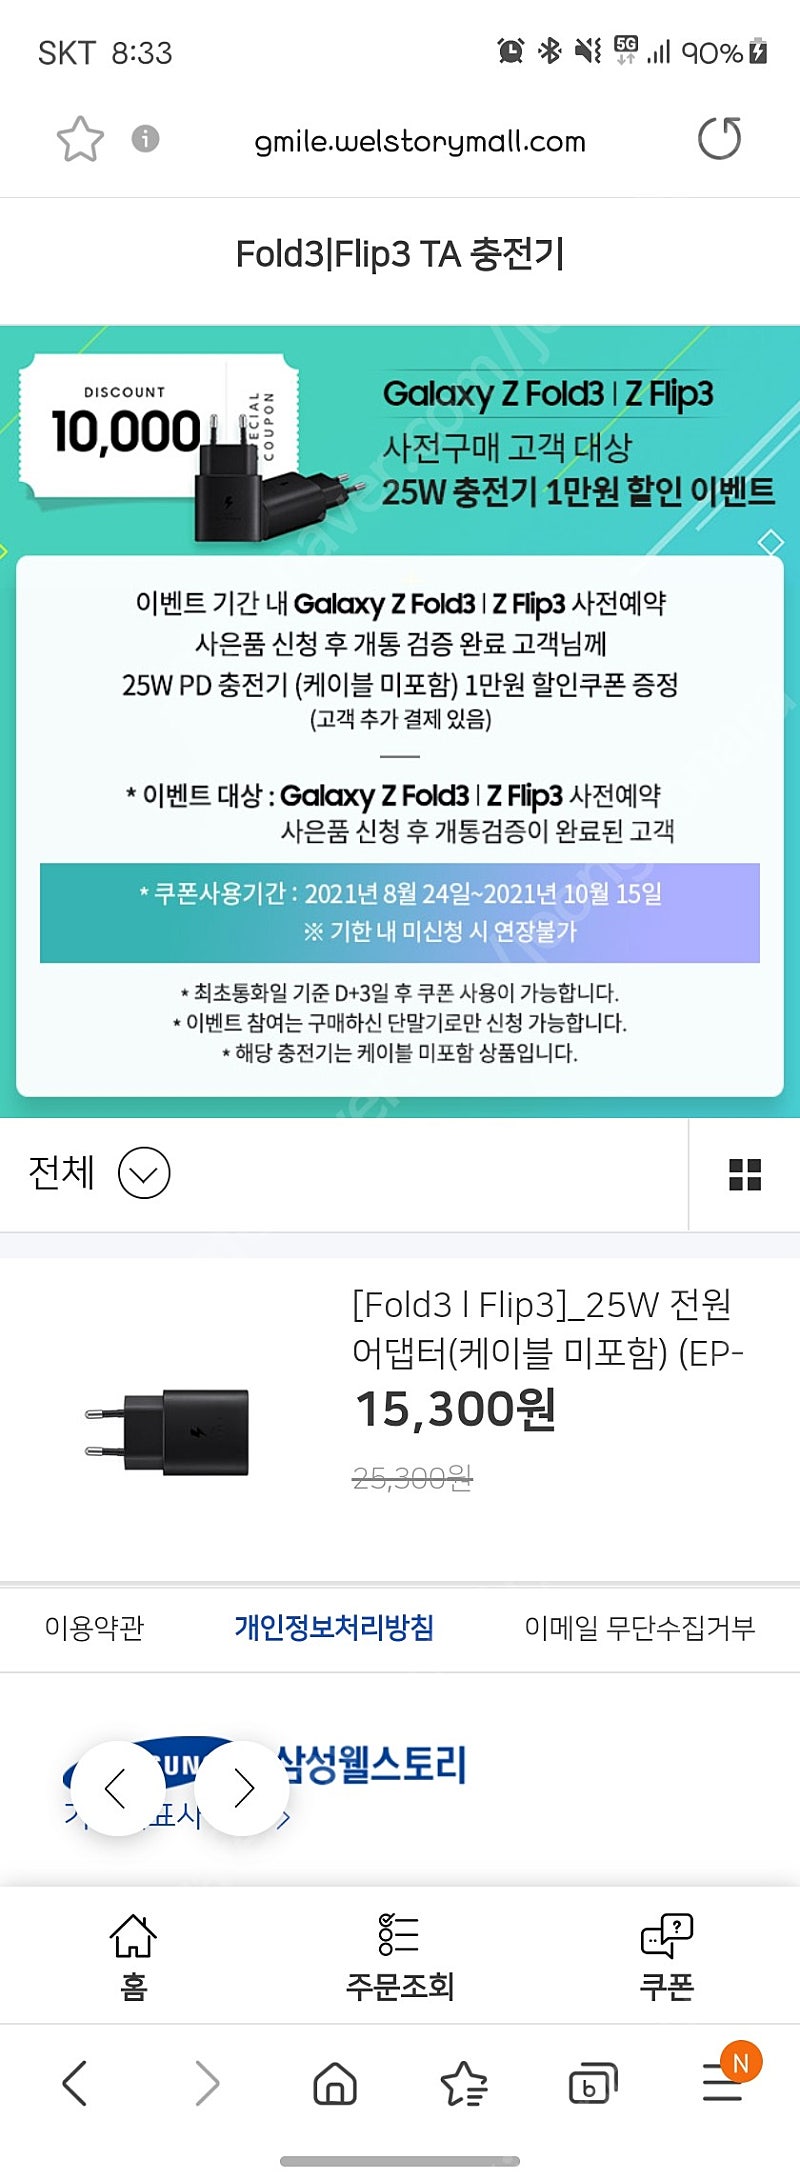 25w 삼성 정품 충전기 1만원할인적용 판매합니다 (내용확인 필)